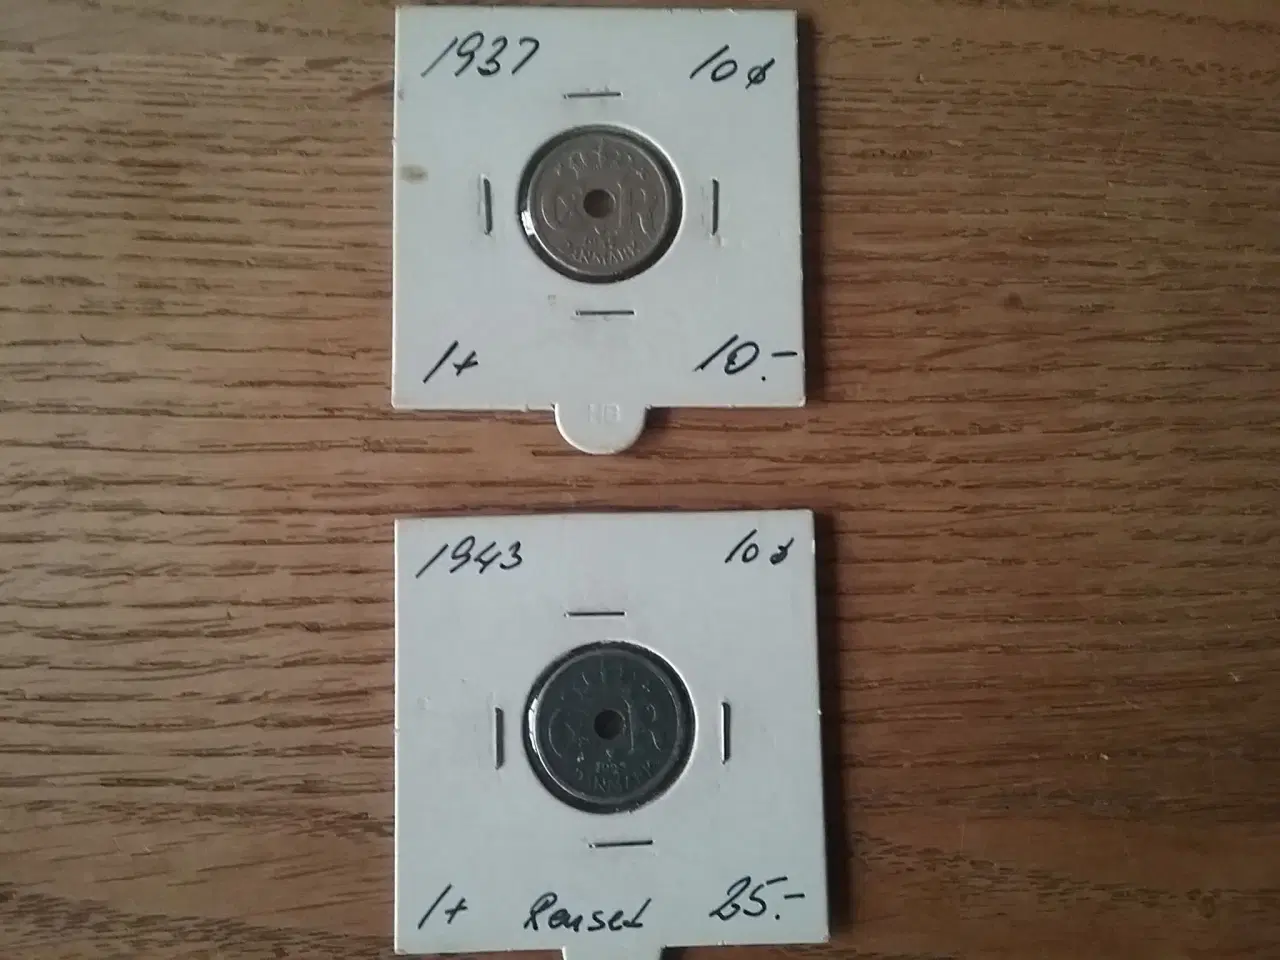 Billede 1 - 10 øre fra 1937 og 1943